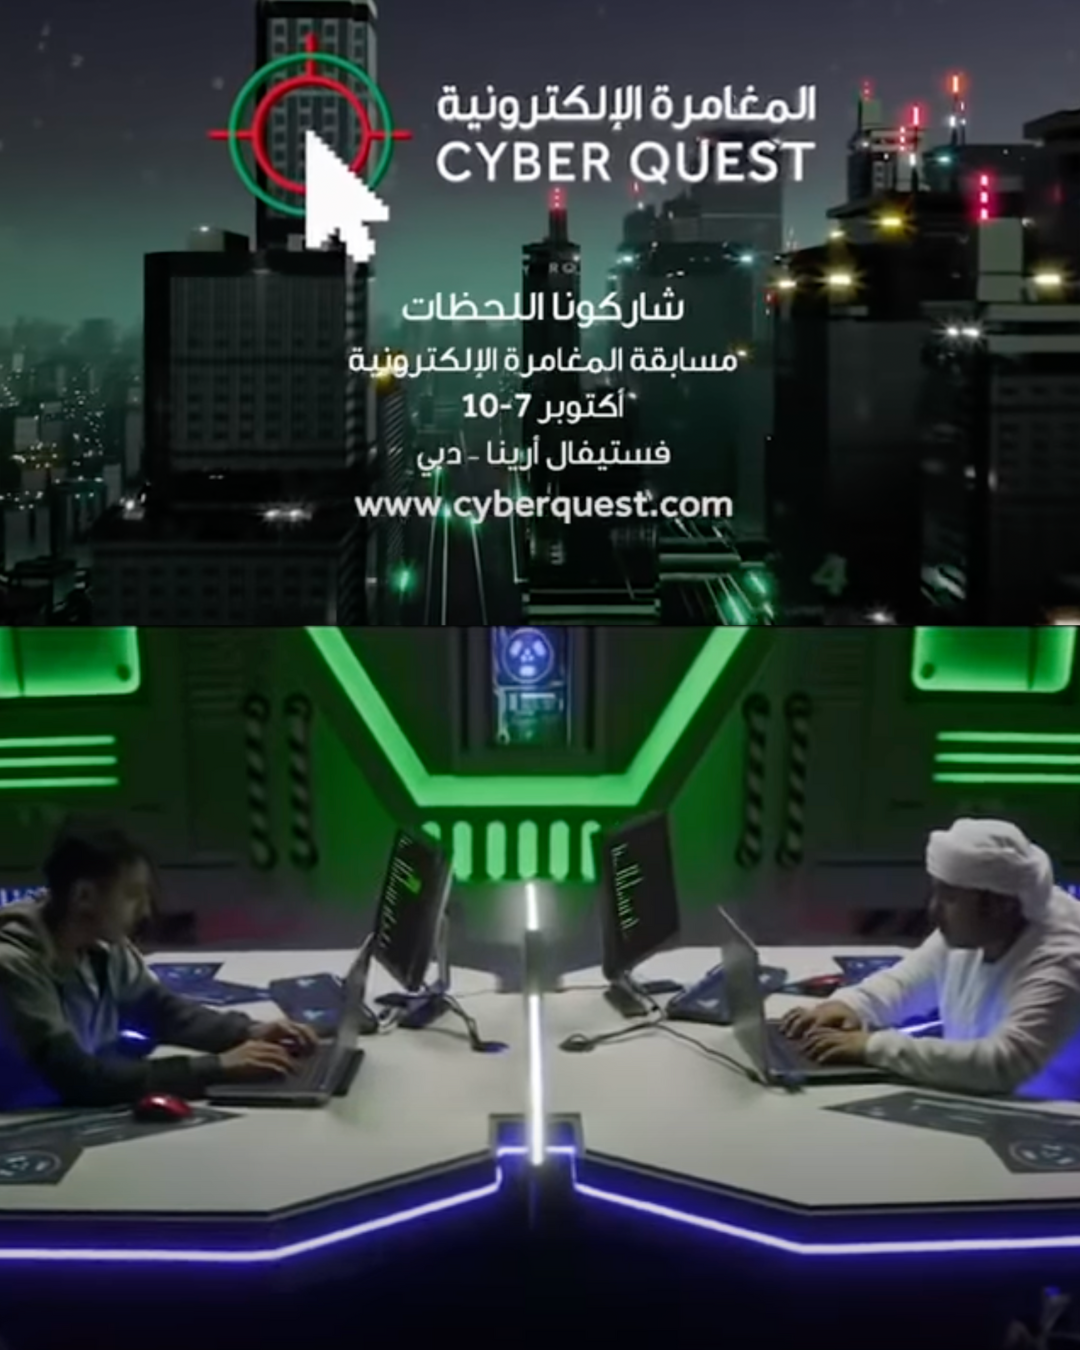 UAE CyberQuest